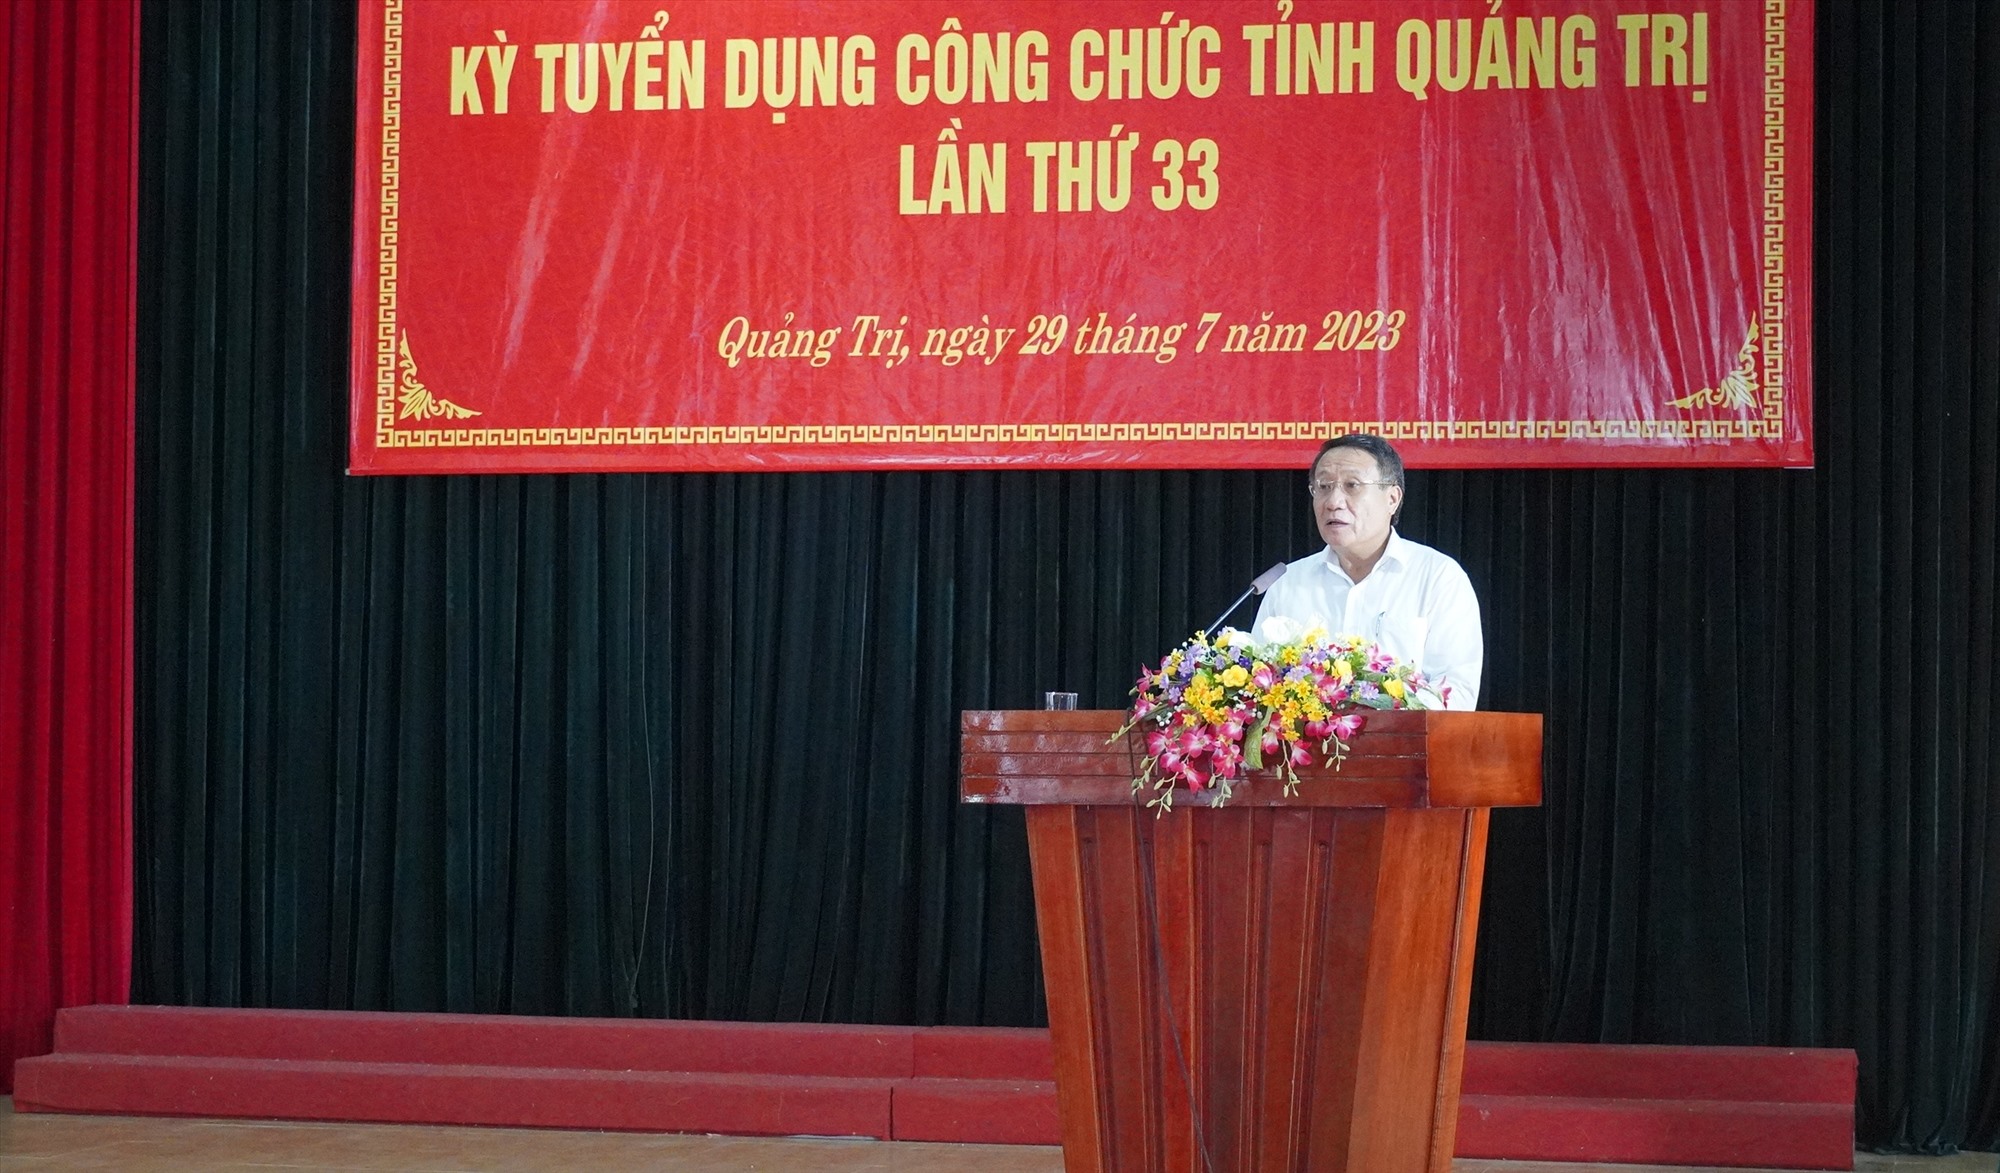 Phó Chủ tịch Thường trực UBND tỉnh Hà Sỹ Đồng phát biểu khai mạc kỳ tuyển dụng công chức tỉnh lần thứ 33 - Ảnh: TN